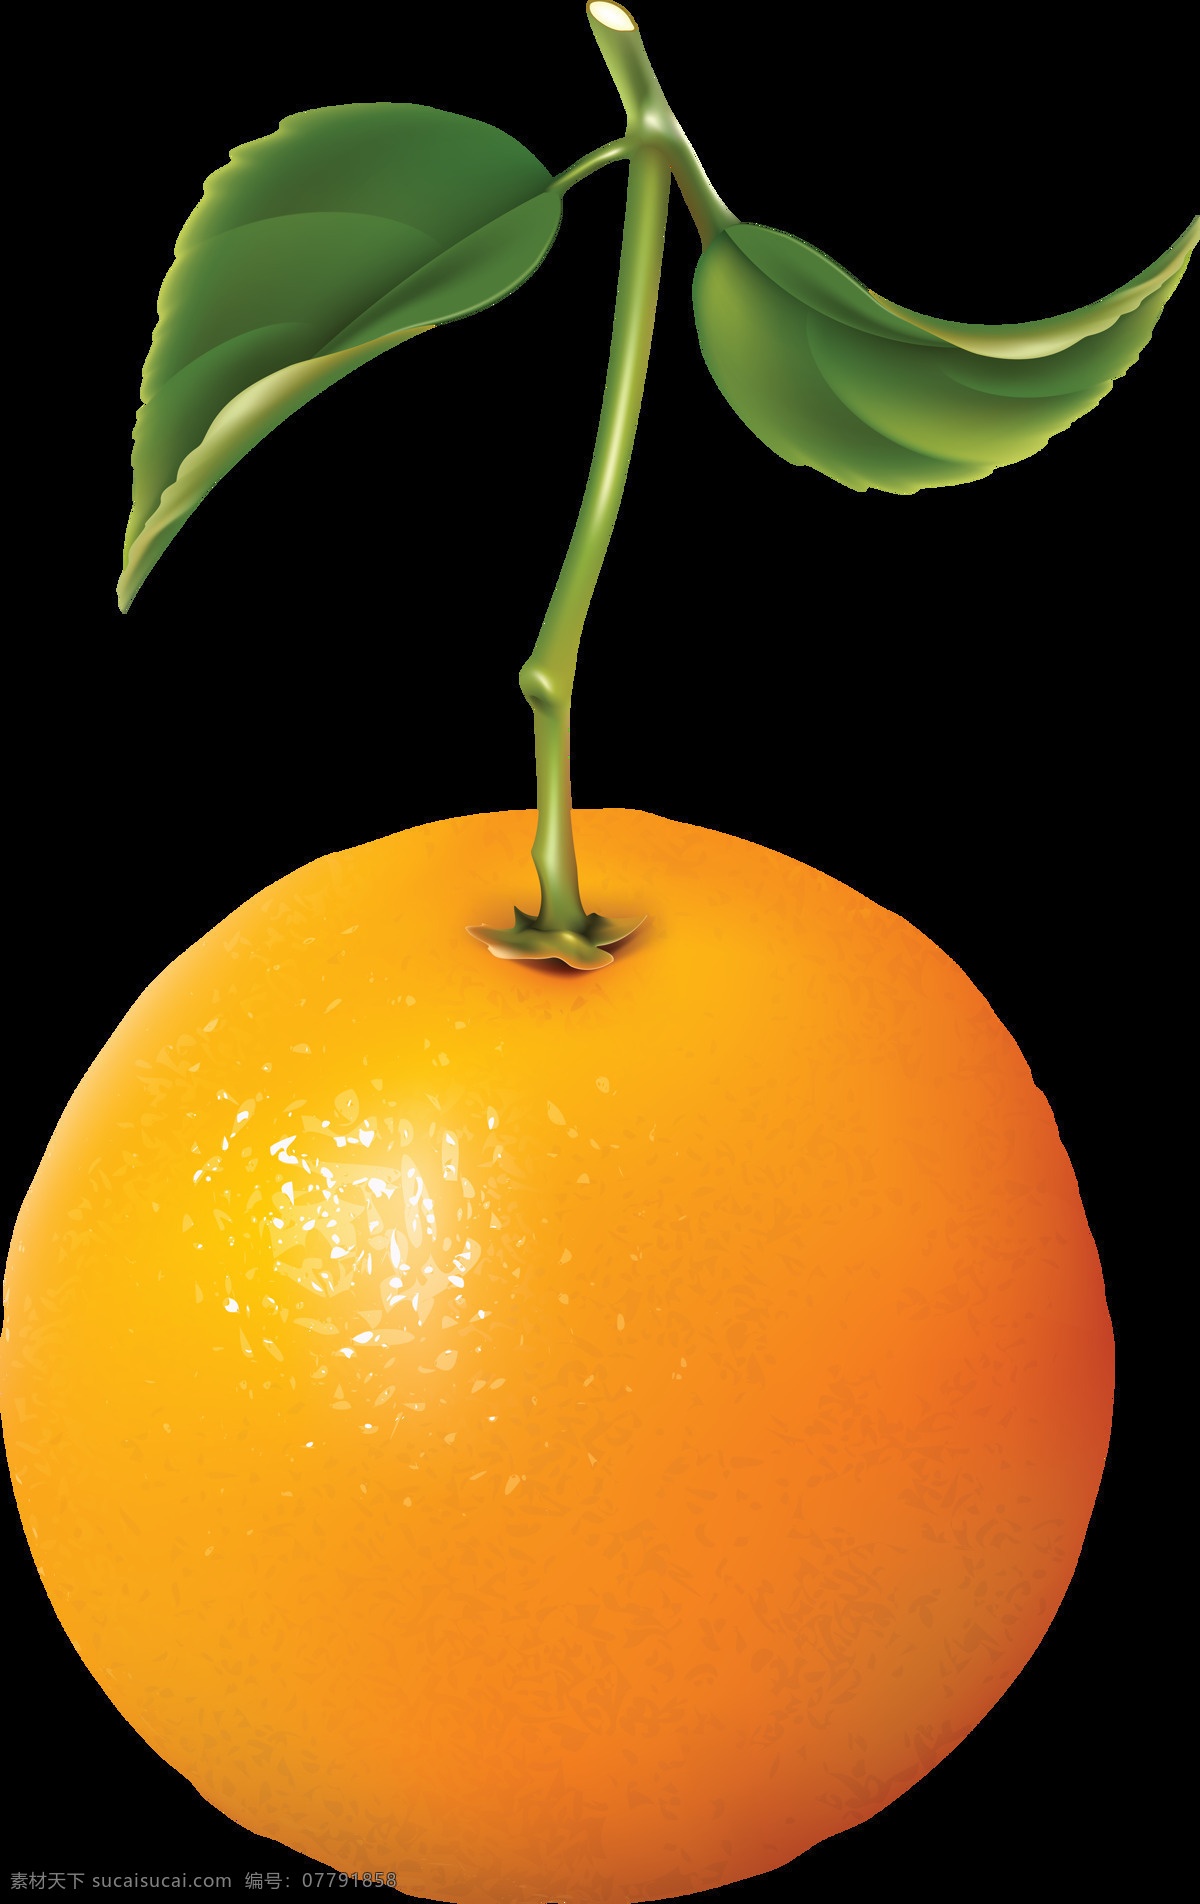 橙子 桔子 橘子 蔬菜 食品 新鲜 美味 美食 素食 蔬菜水果 水果 水果蔬菜 生物世界 设计素材 水果素材 生活用品 生活百科